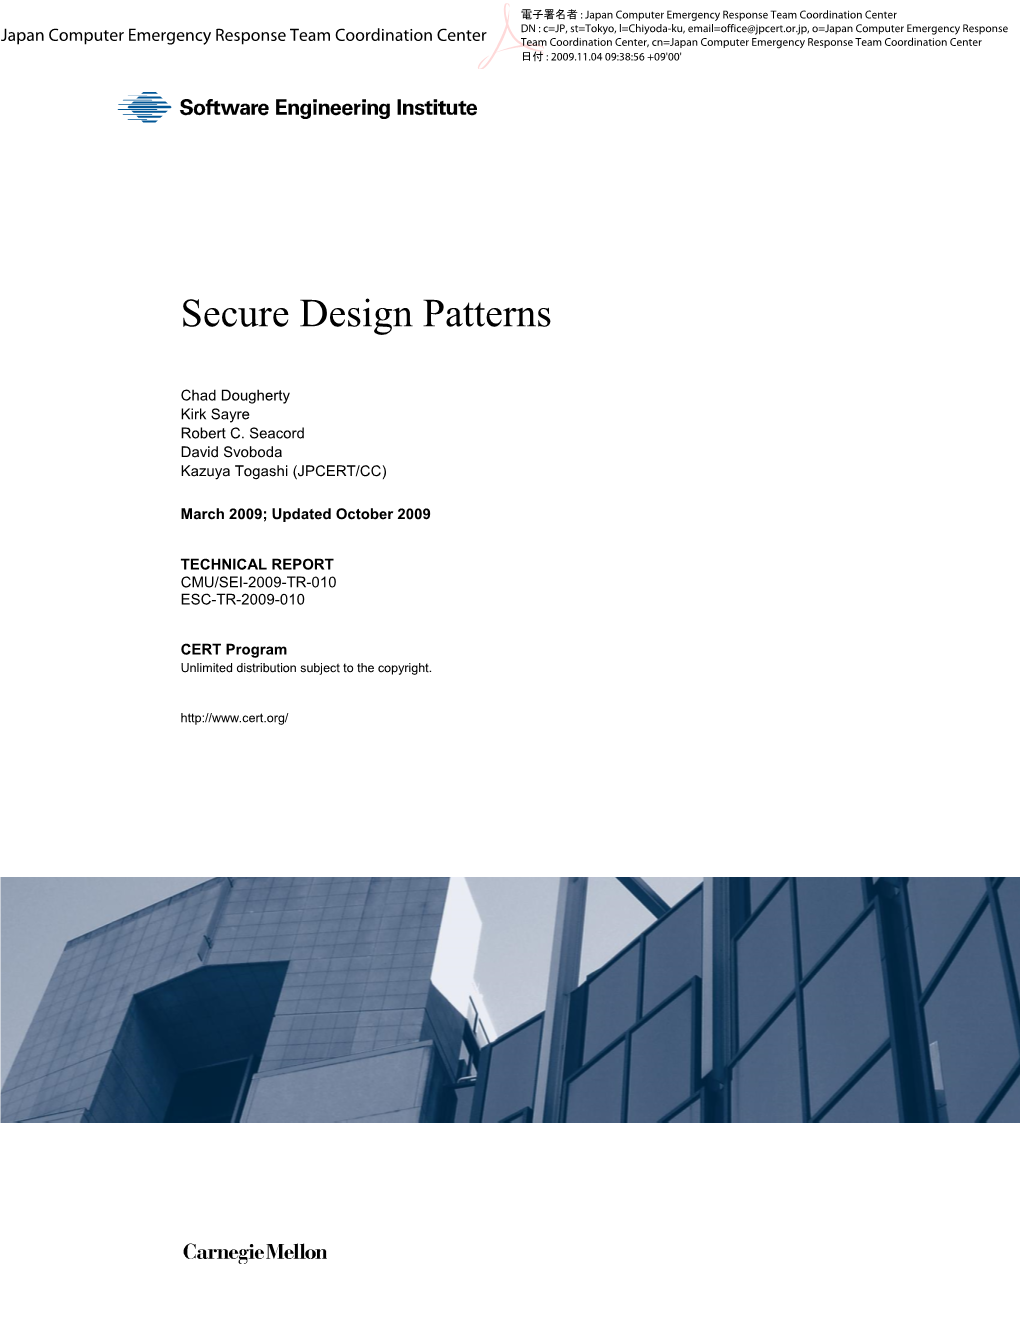 Secure Design Patterns